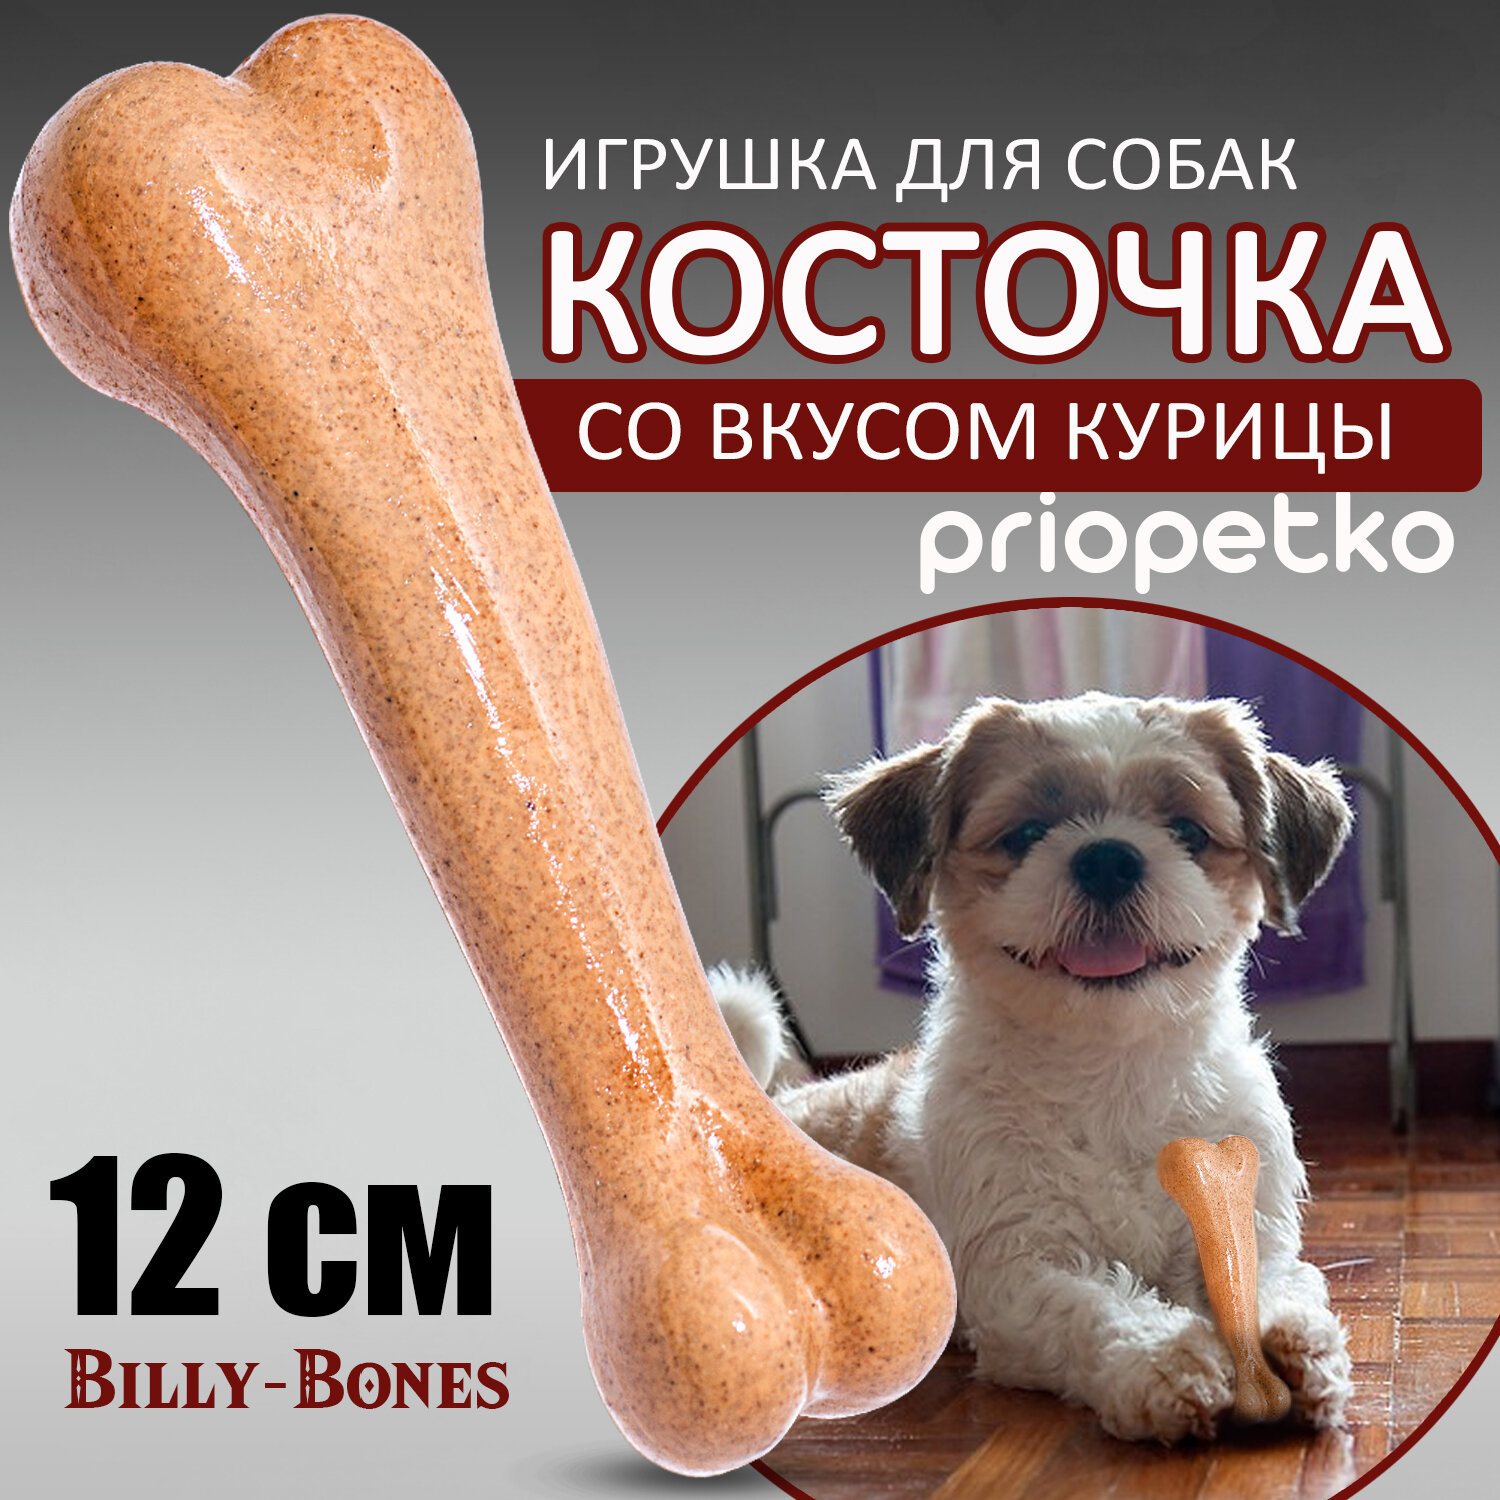 Игрушка косточка для собак со вкусом курицы, 12 см